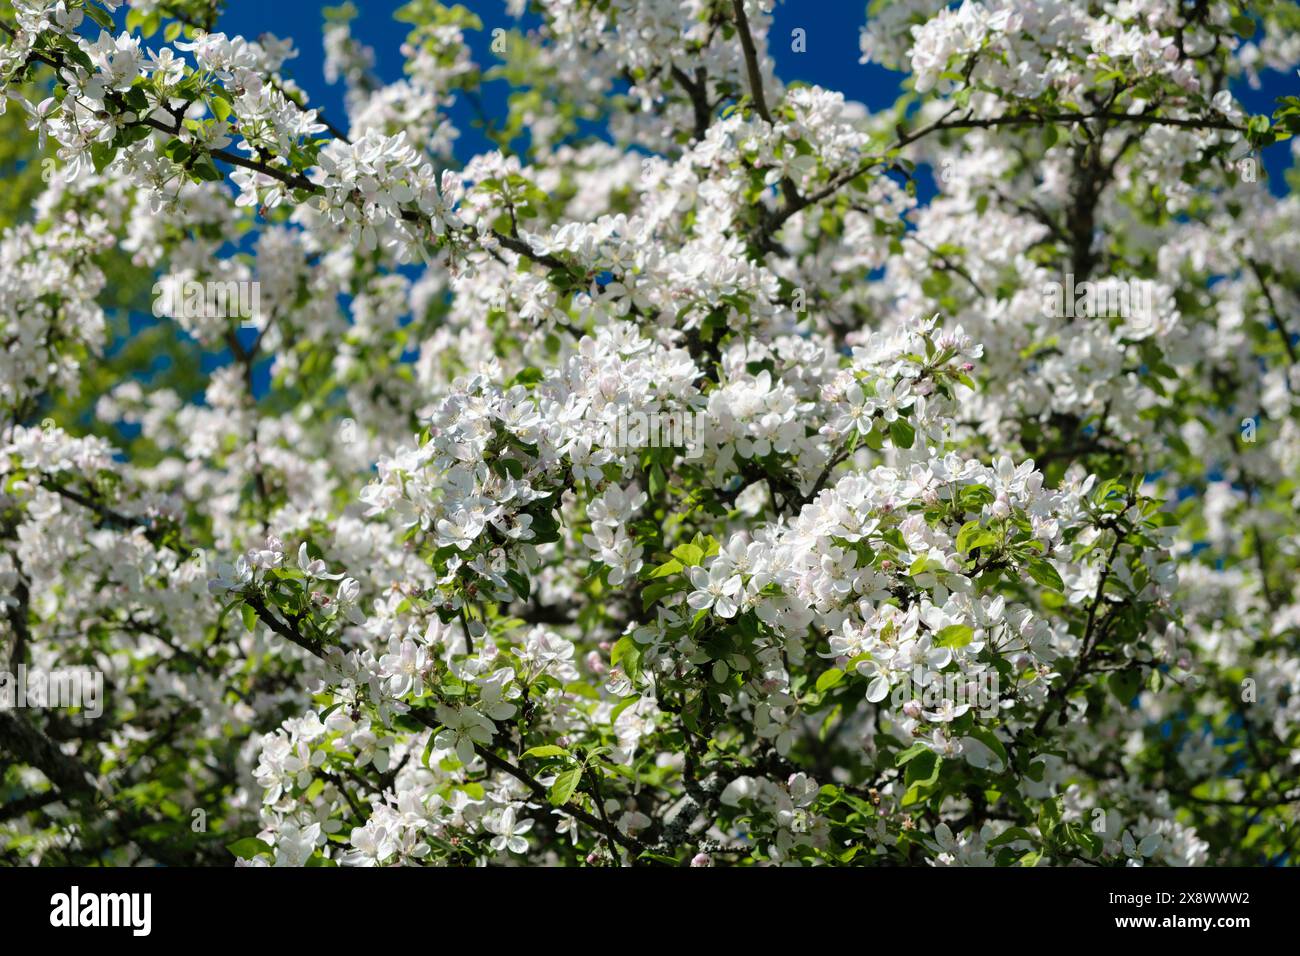 Ein Baum mit weißen Blüten ist in voller Blüte. Die Blüten sind klein und weiß, und sie sind im ganzen Baum verstreut. Die Blätter sind grün und üppig Stockfoto